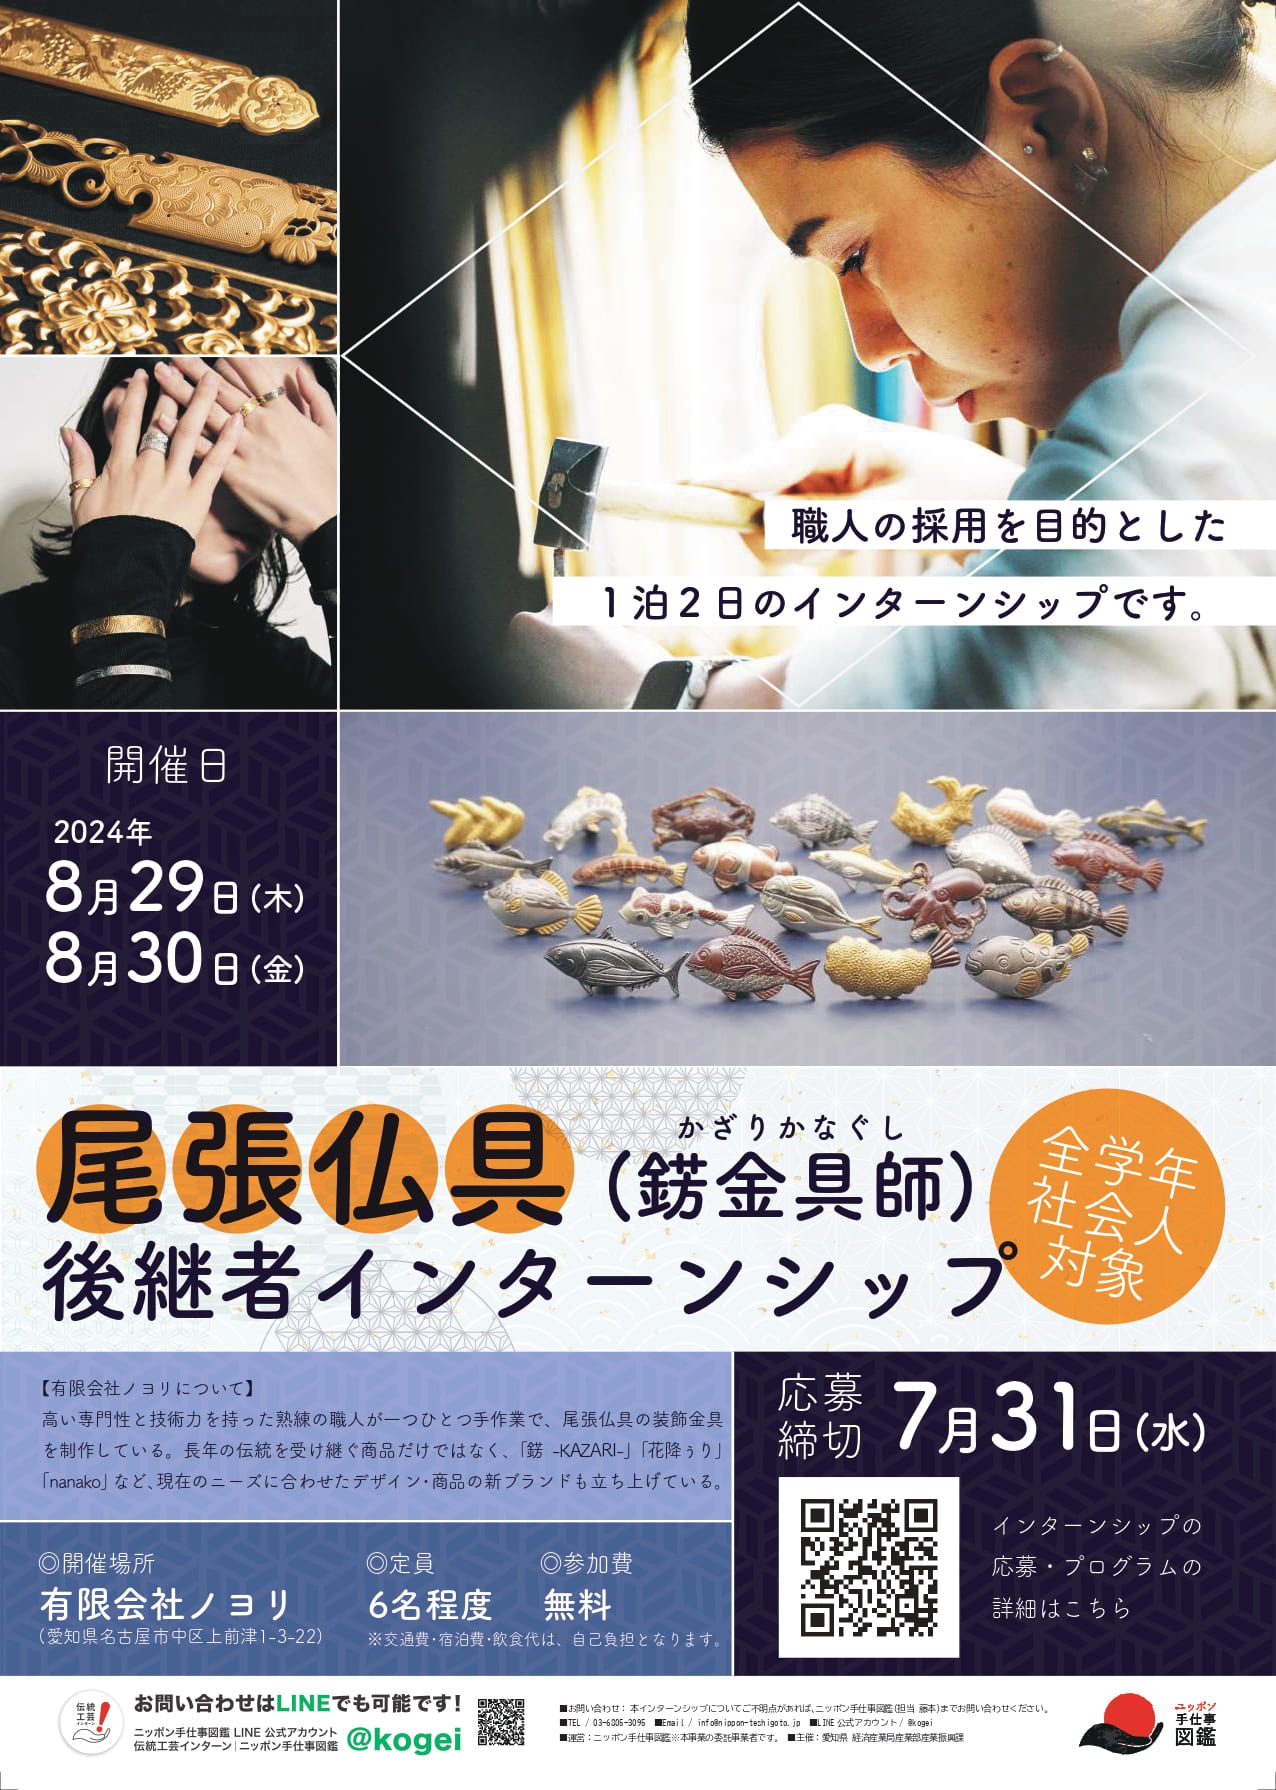 愛知県伝統的工芸品 尾張仏具（錺金具師）後継者インターンシップポスター